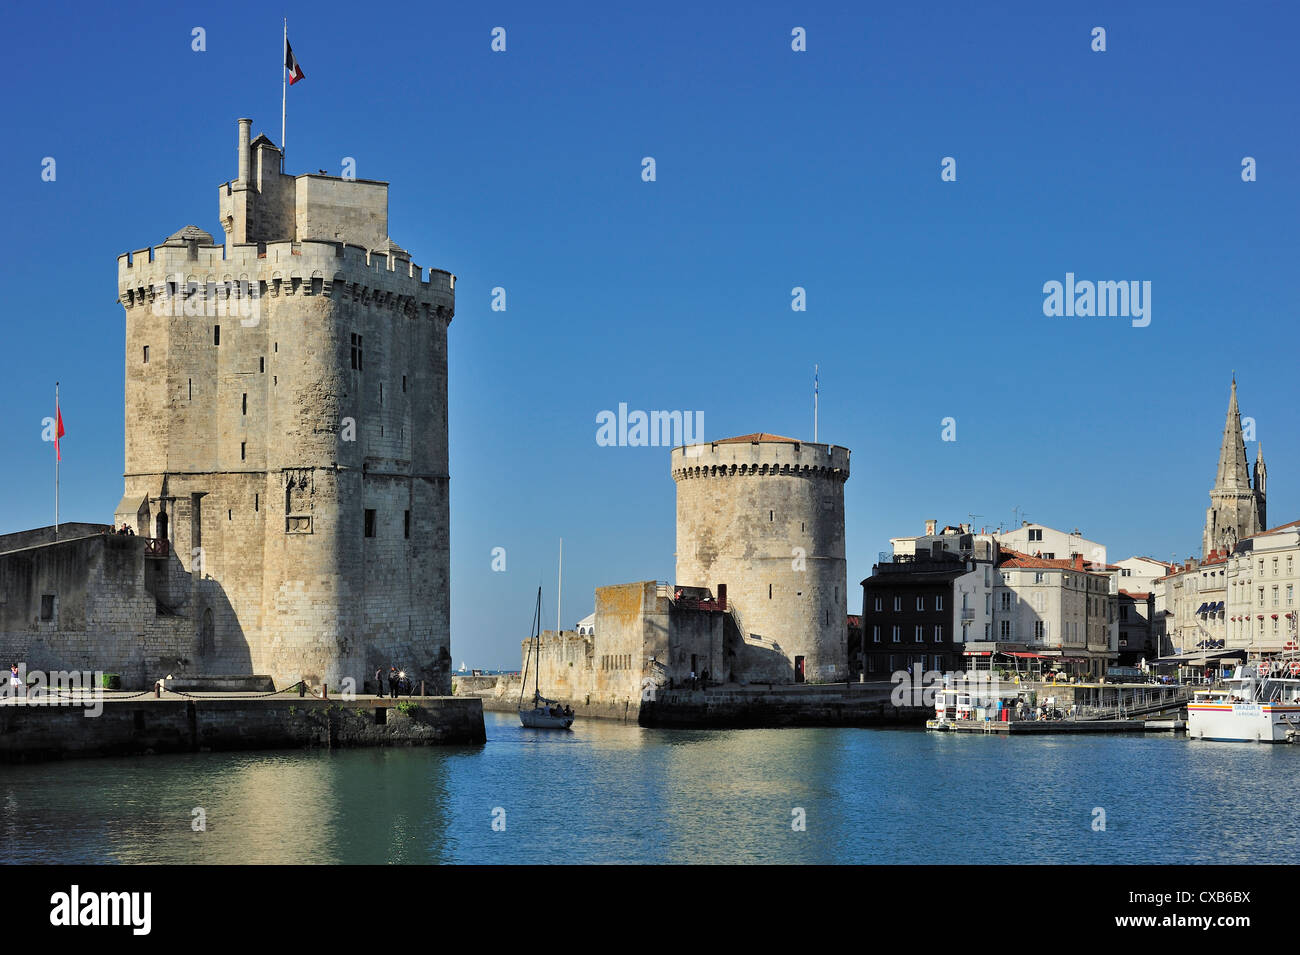 The towers tour de la Chaîne and tour Saint-Nicolas in the old harbour / Vieux-Port at La Rochelle, Charente Maritime, France Stock Photo